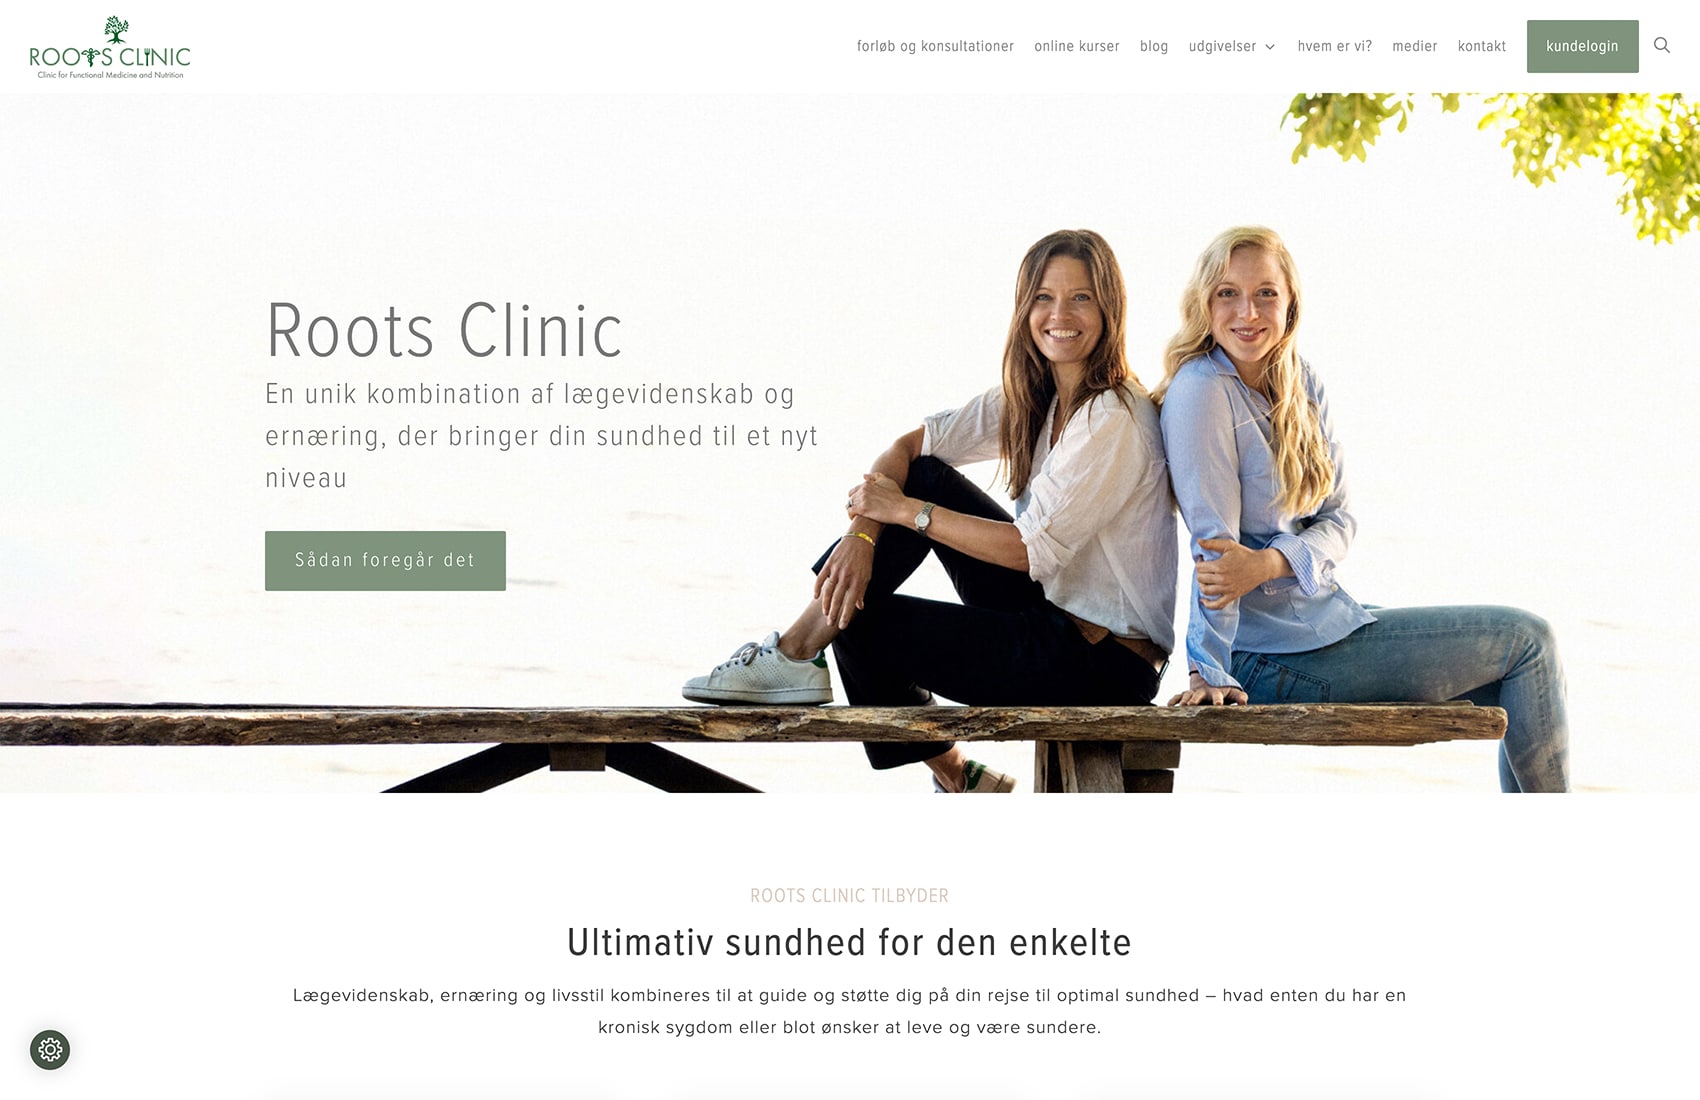 Roots Clinic : Functional Medicine - sundhed, ernæring og livsstil